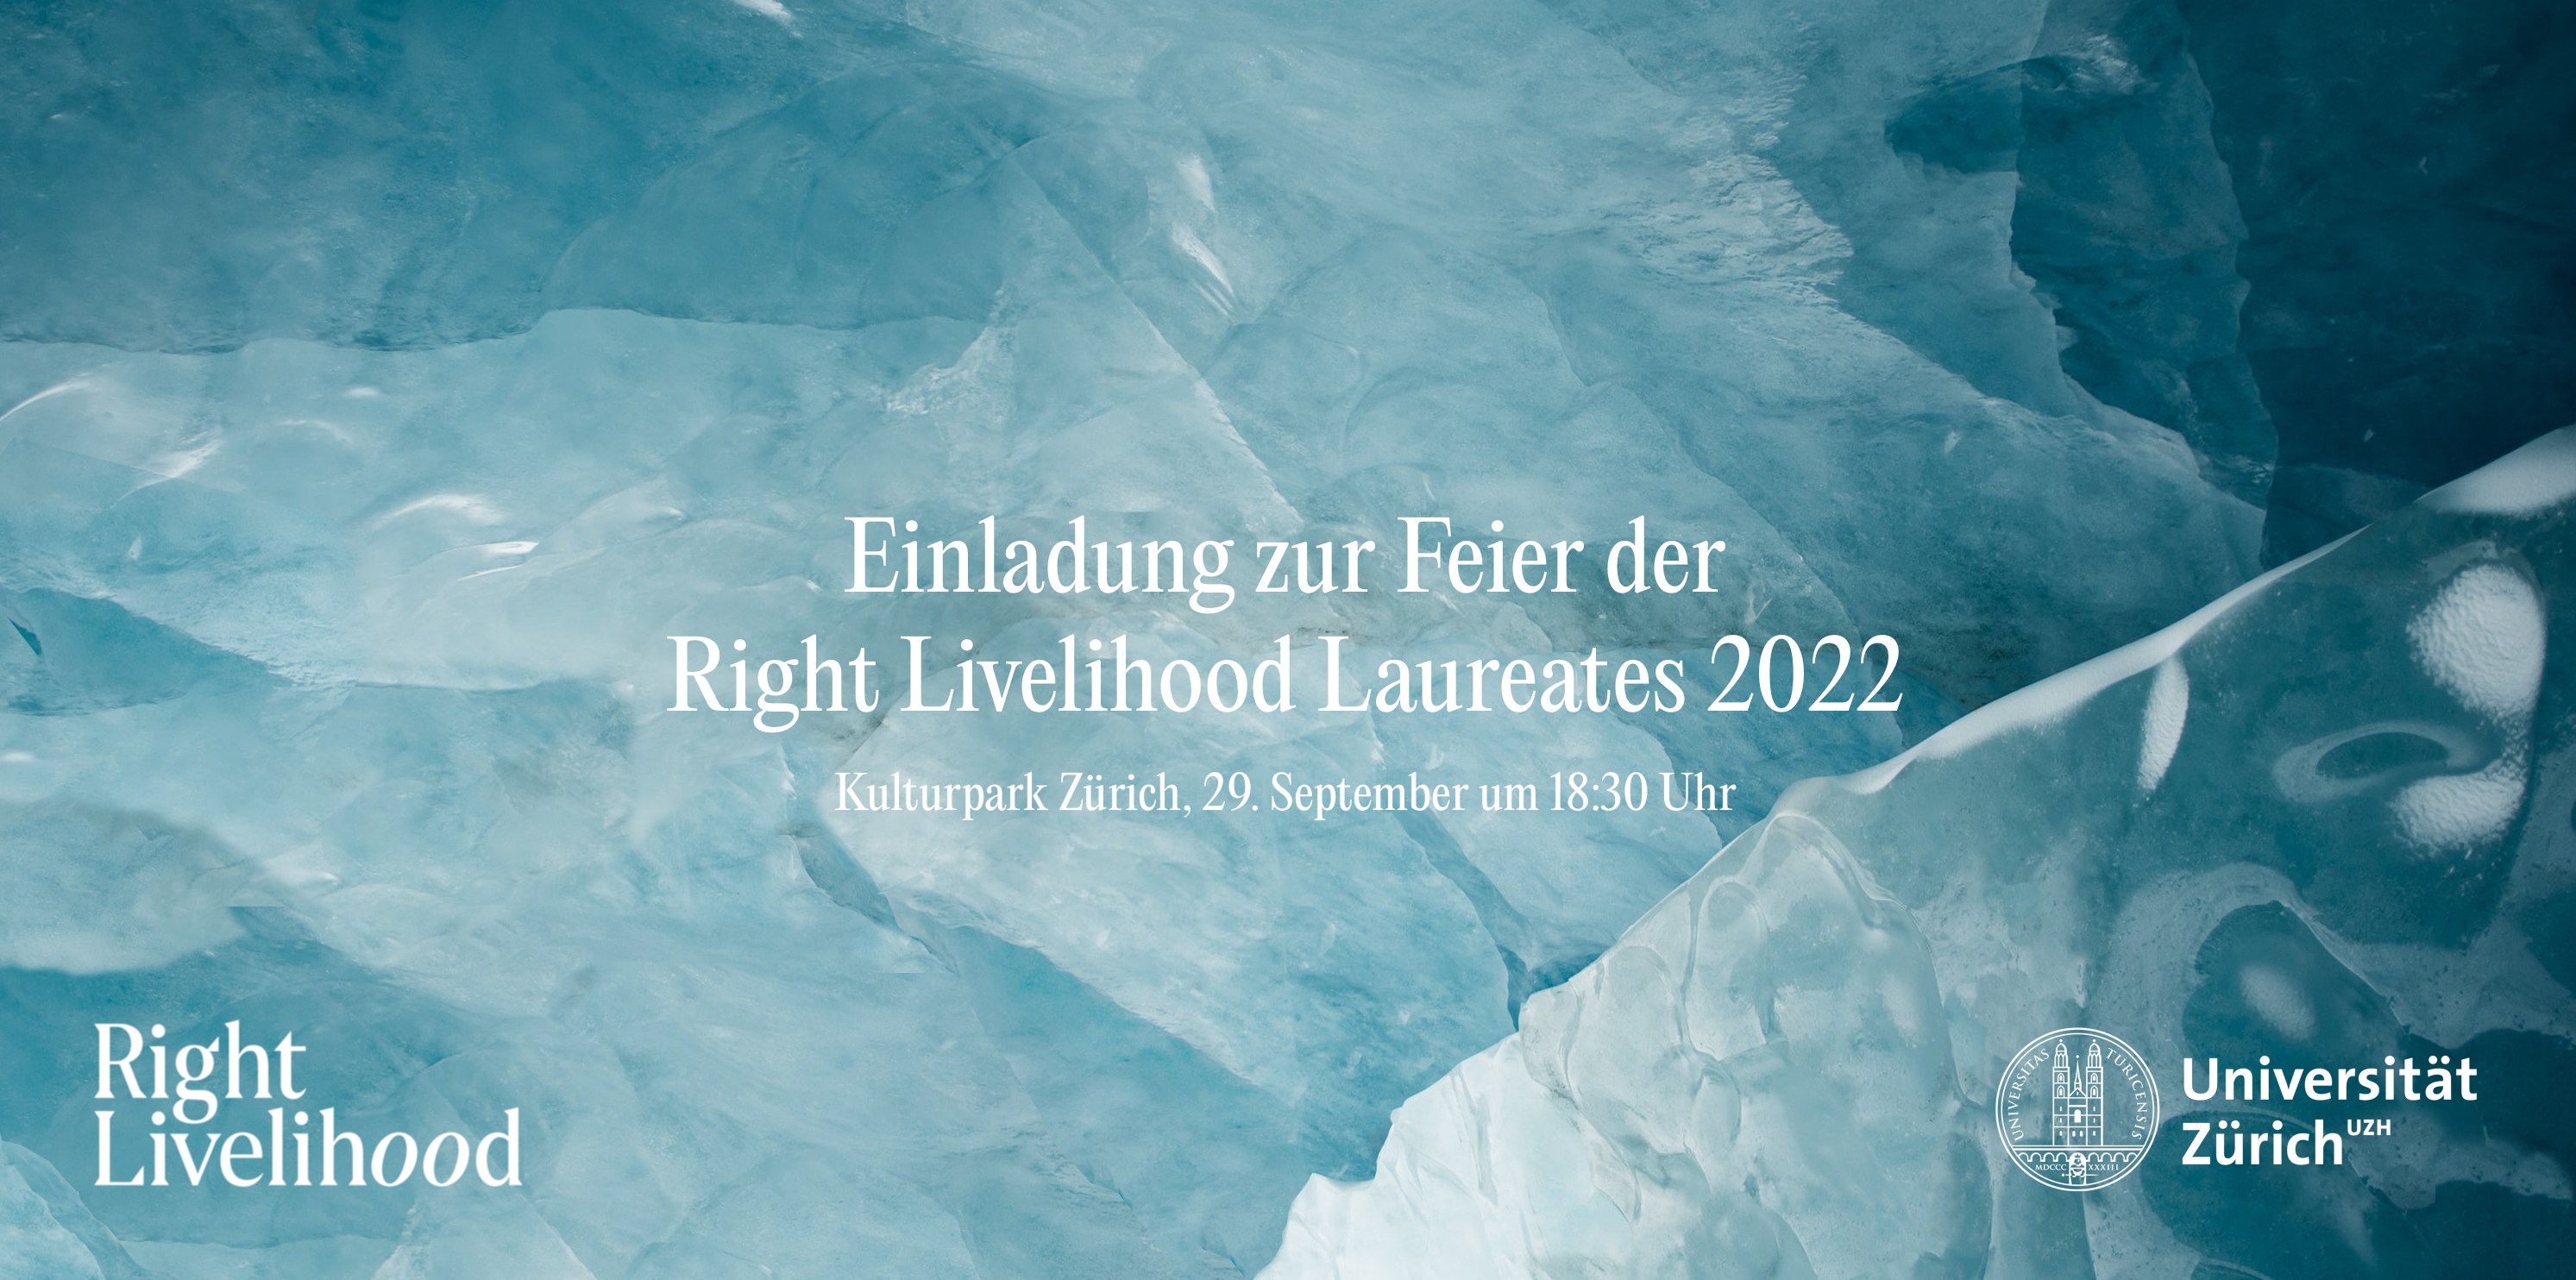 Einladung zur Feier der Right Livelihood Laureates 2022 im Kulturpark am 29. September um 18:30 Uhr